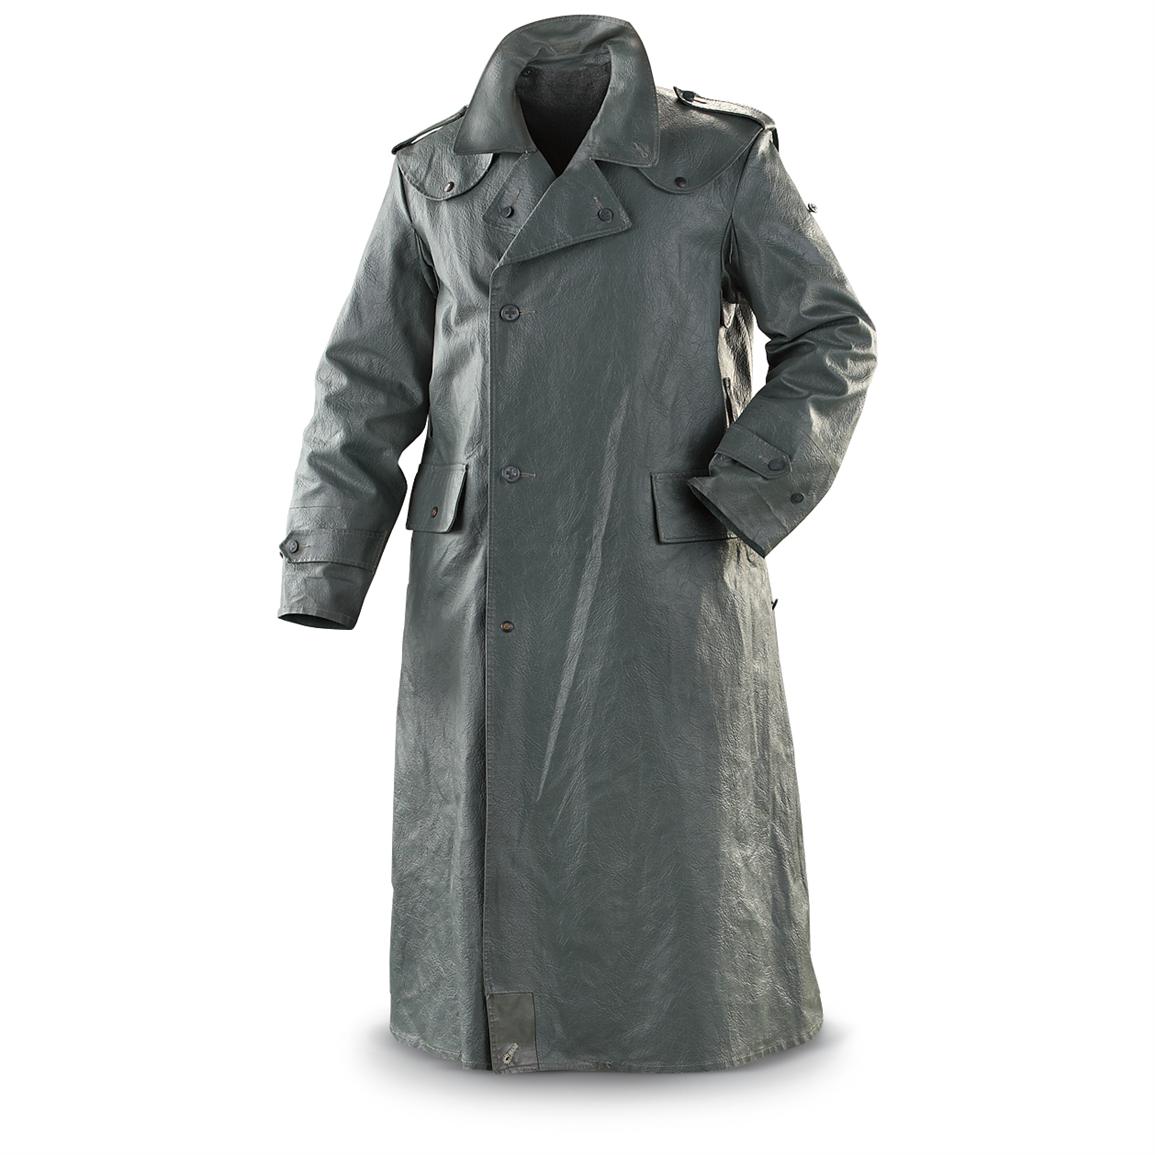 Swiss Military Surplus Leather-Like Overcoat, Used - 182285 ...